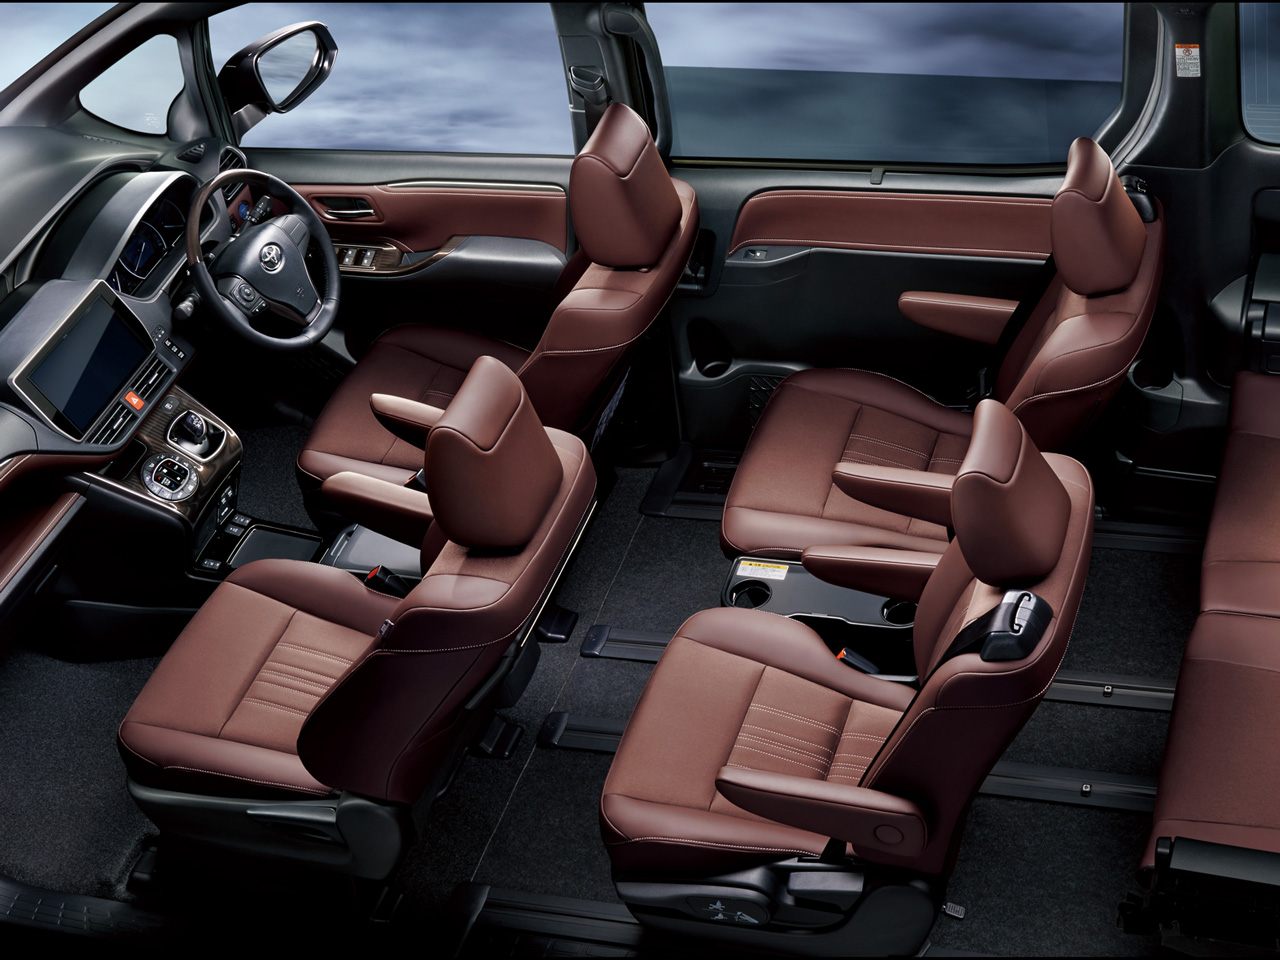 トヨタ エスクァイア 14年モデル Gi 8人乗り の価格 性能 装備 オプション 16年1月6日発売 価格 Com